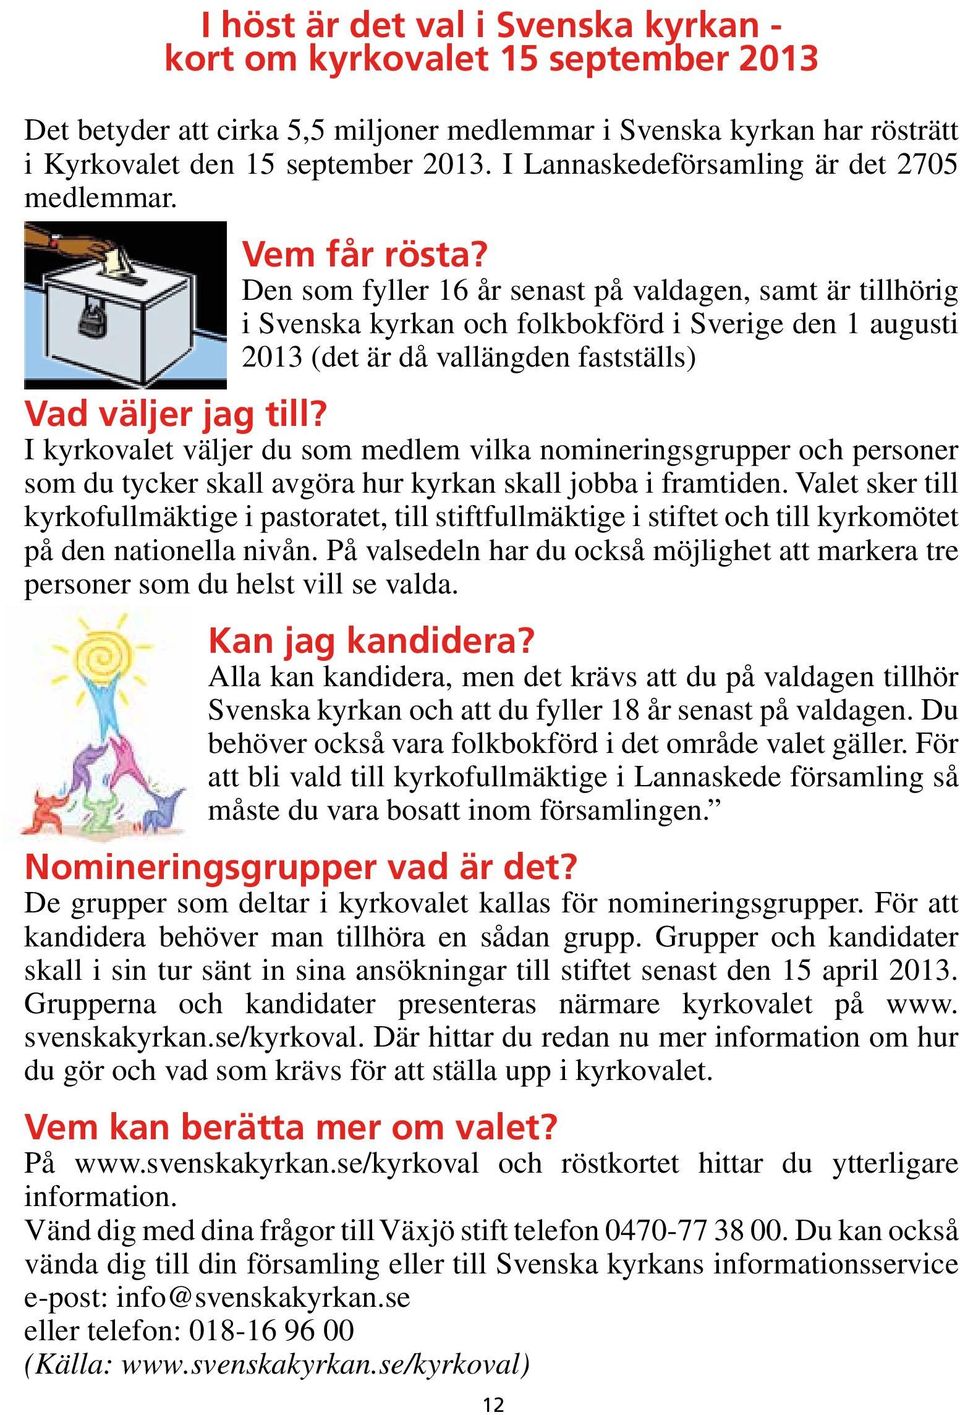 Den som fyller 16 år senast på valdagen, samt är tillhörig i Svenska kyrkan och folkbokförd i Sverige den 1 augusti 2013 (det är då vallängden fastställs) Vad väljer jag till?